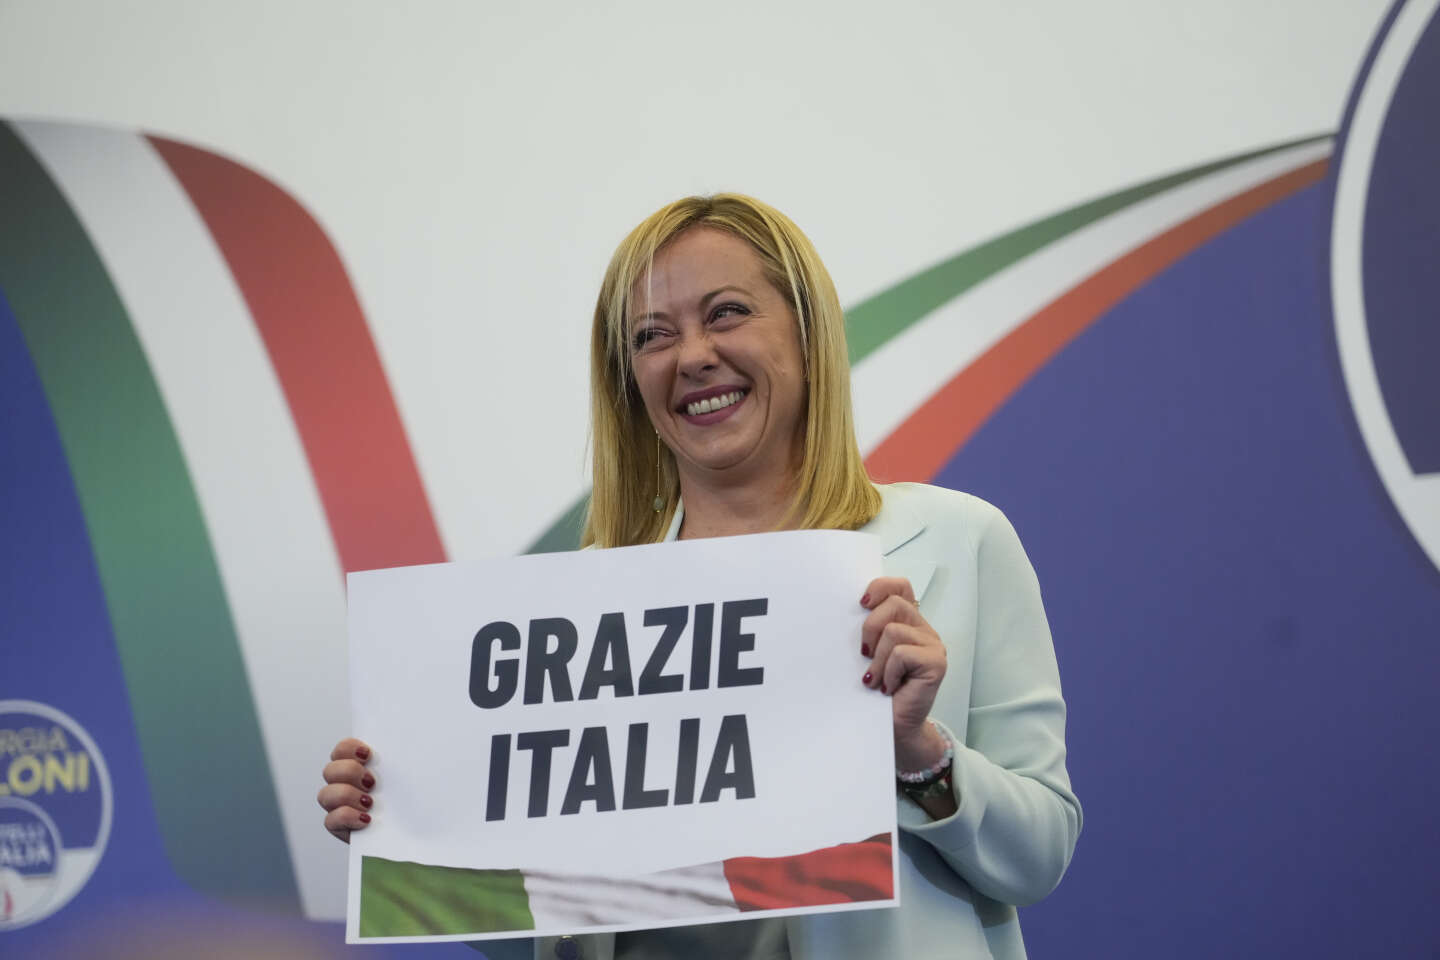 De ultraconservatieve Giorgia Meloni van haar partij leidt de volgende regering